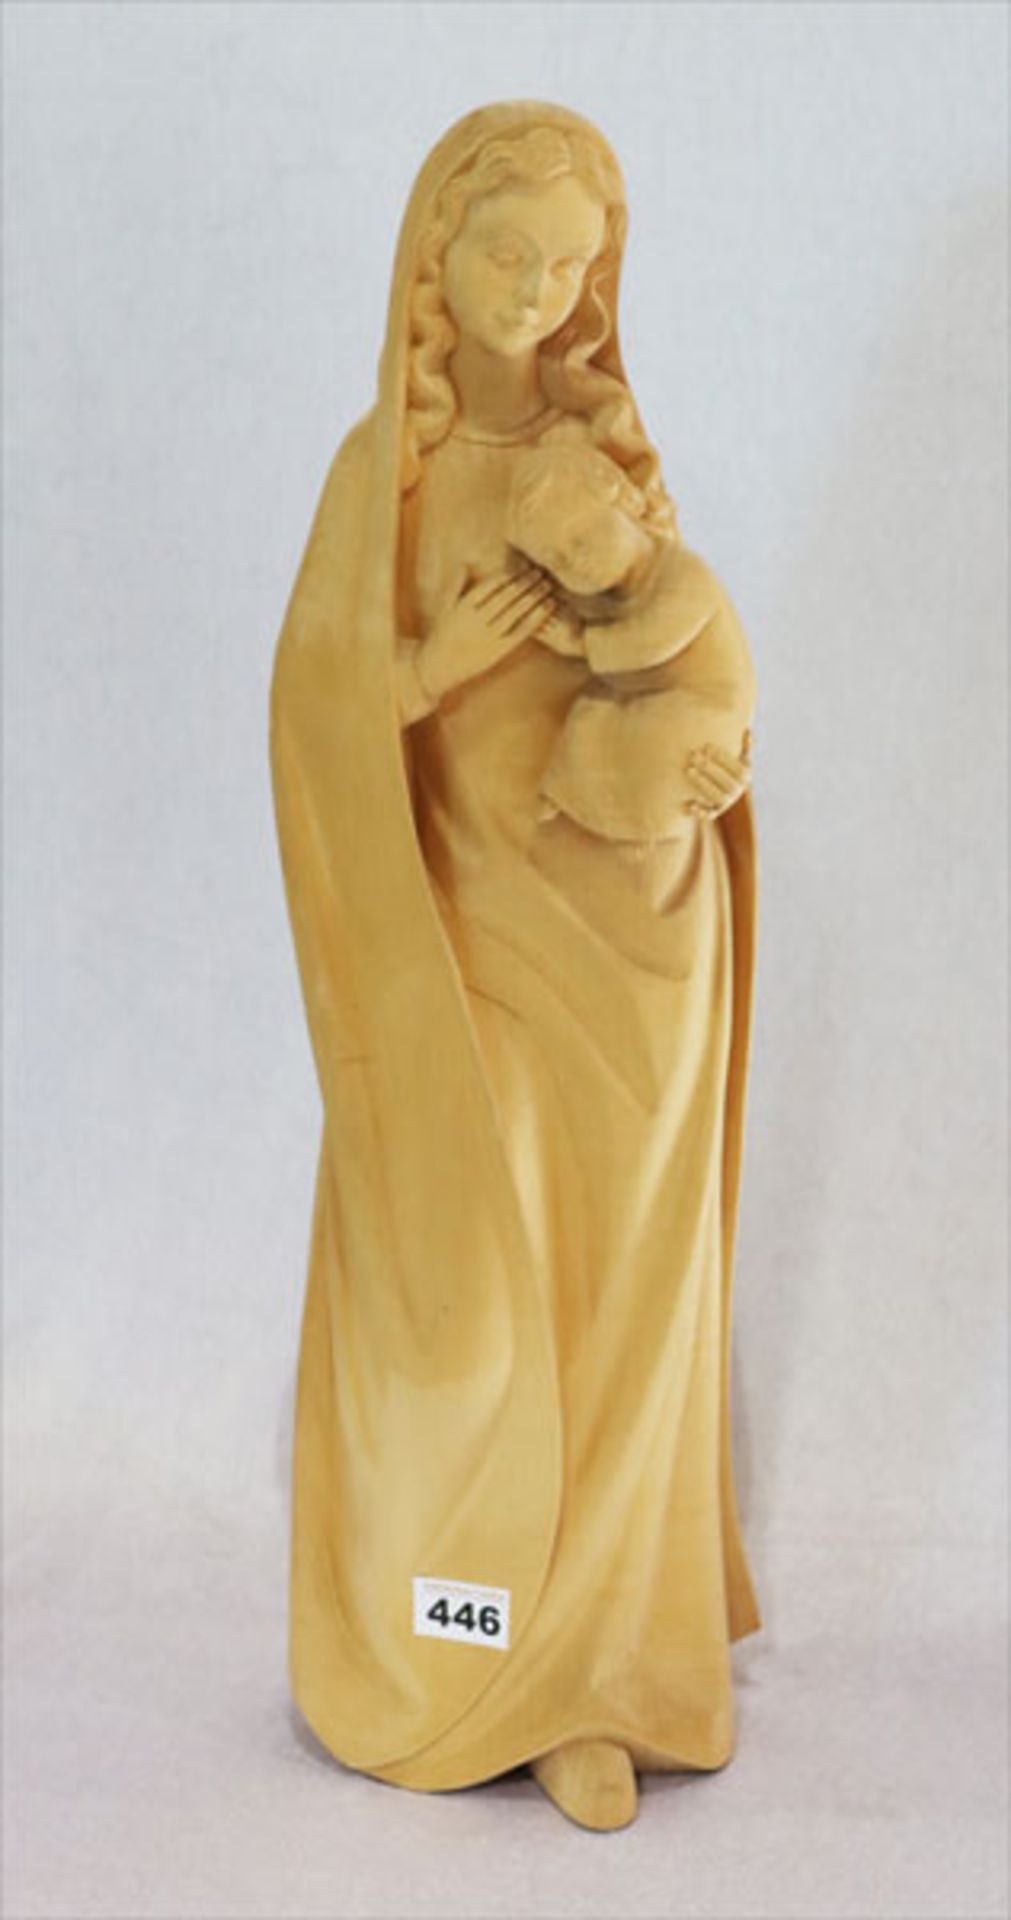 Holz Figur 'Maria mit Kind', am Boden gestempelt 'Handgeschnitzt Oberammergau', H 60 cm